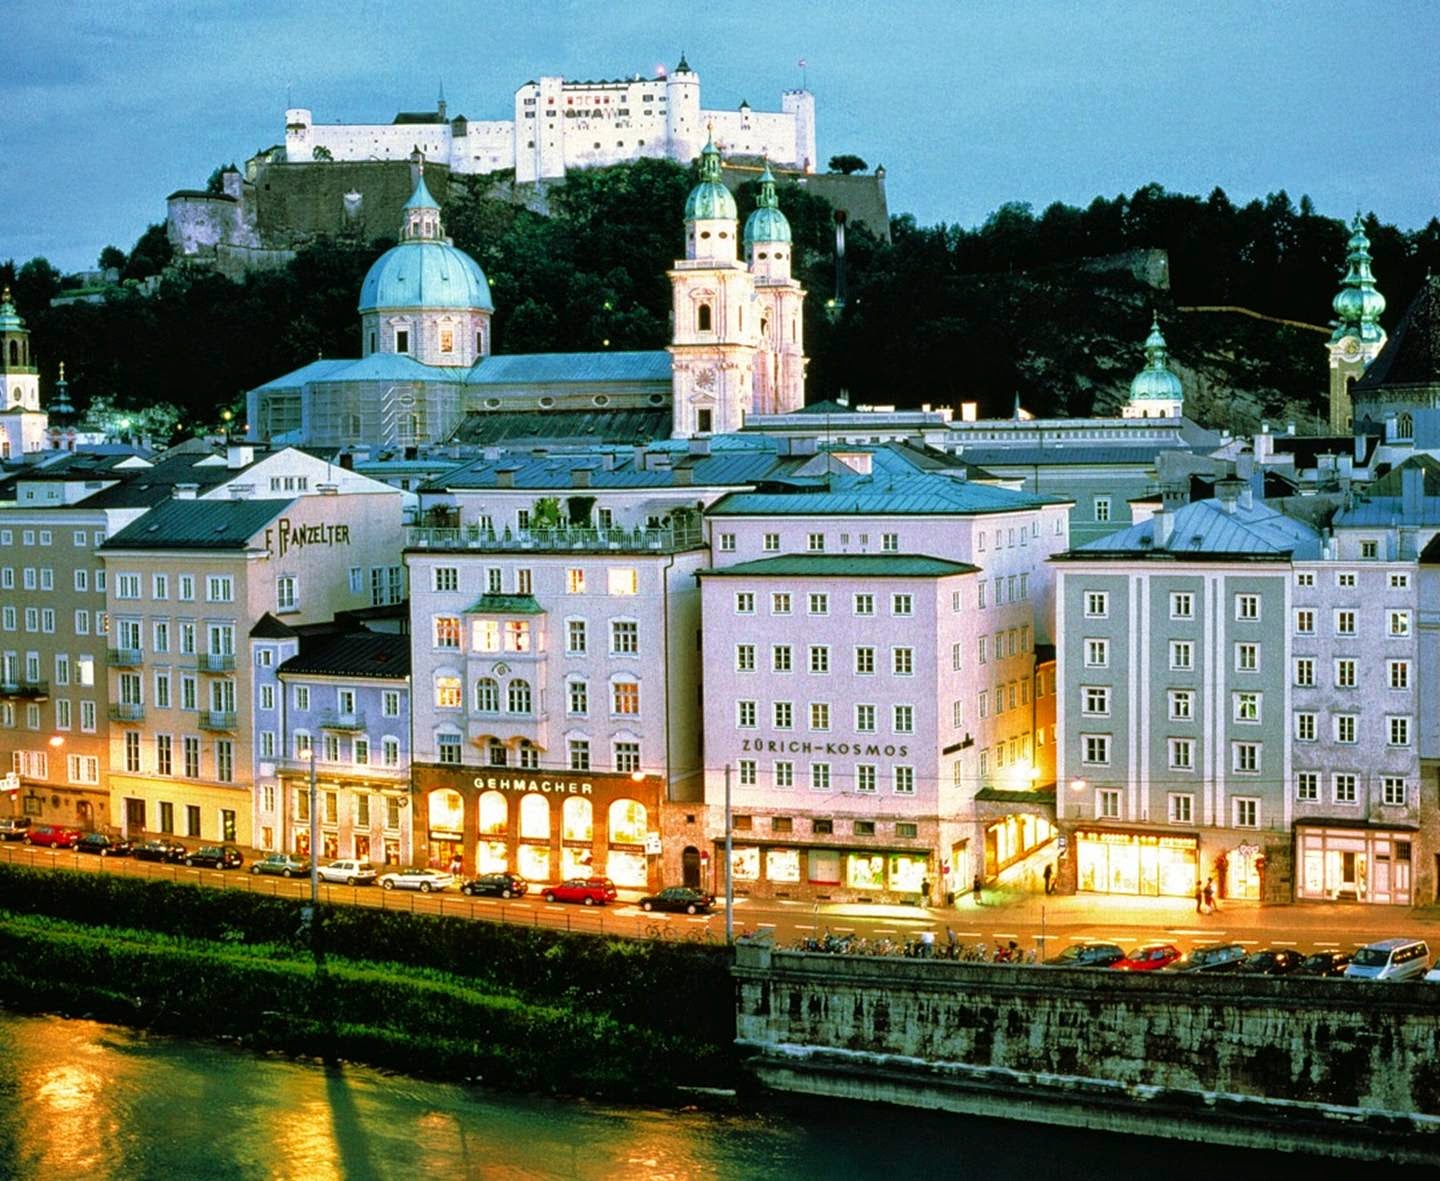 Kết quả hình ảnh cho Hình ảnh Thành phố Salzburg quê hương Mozart